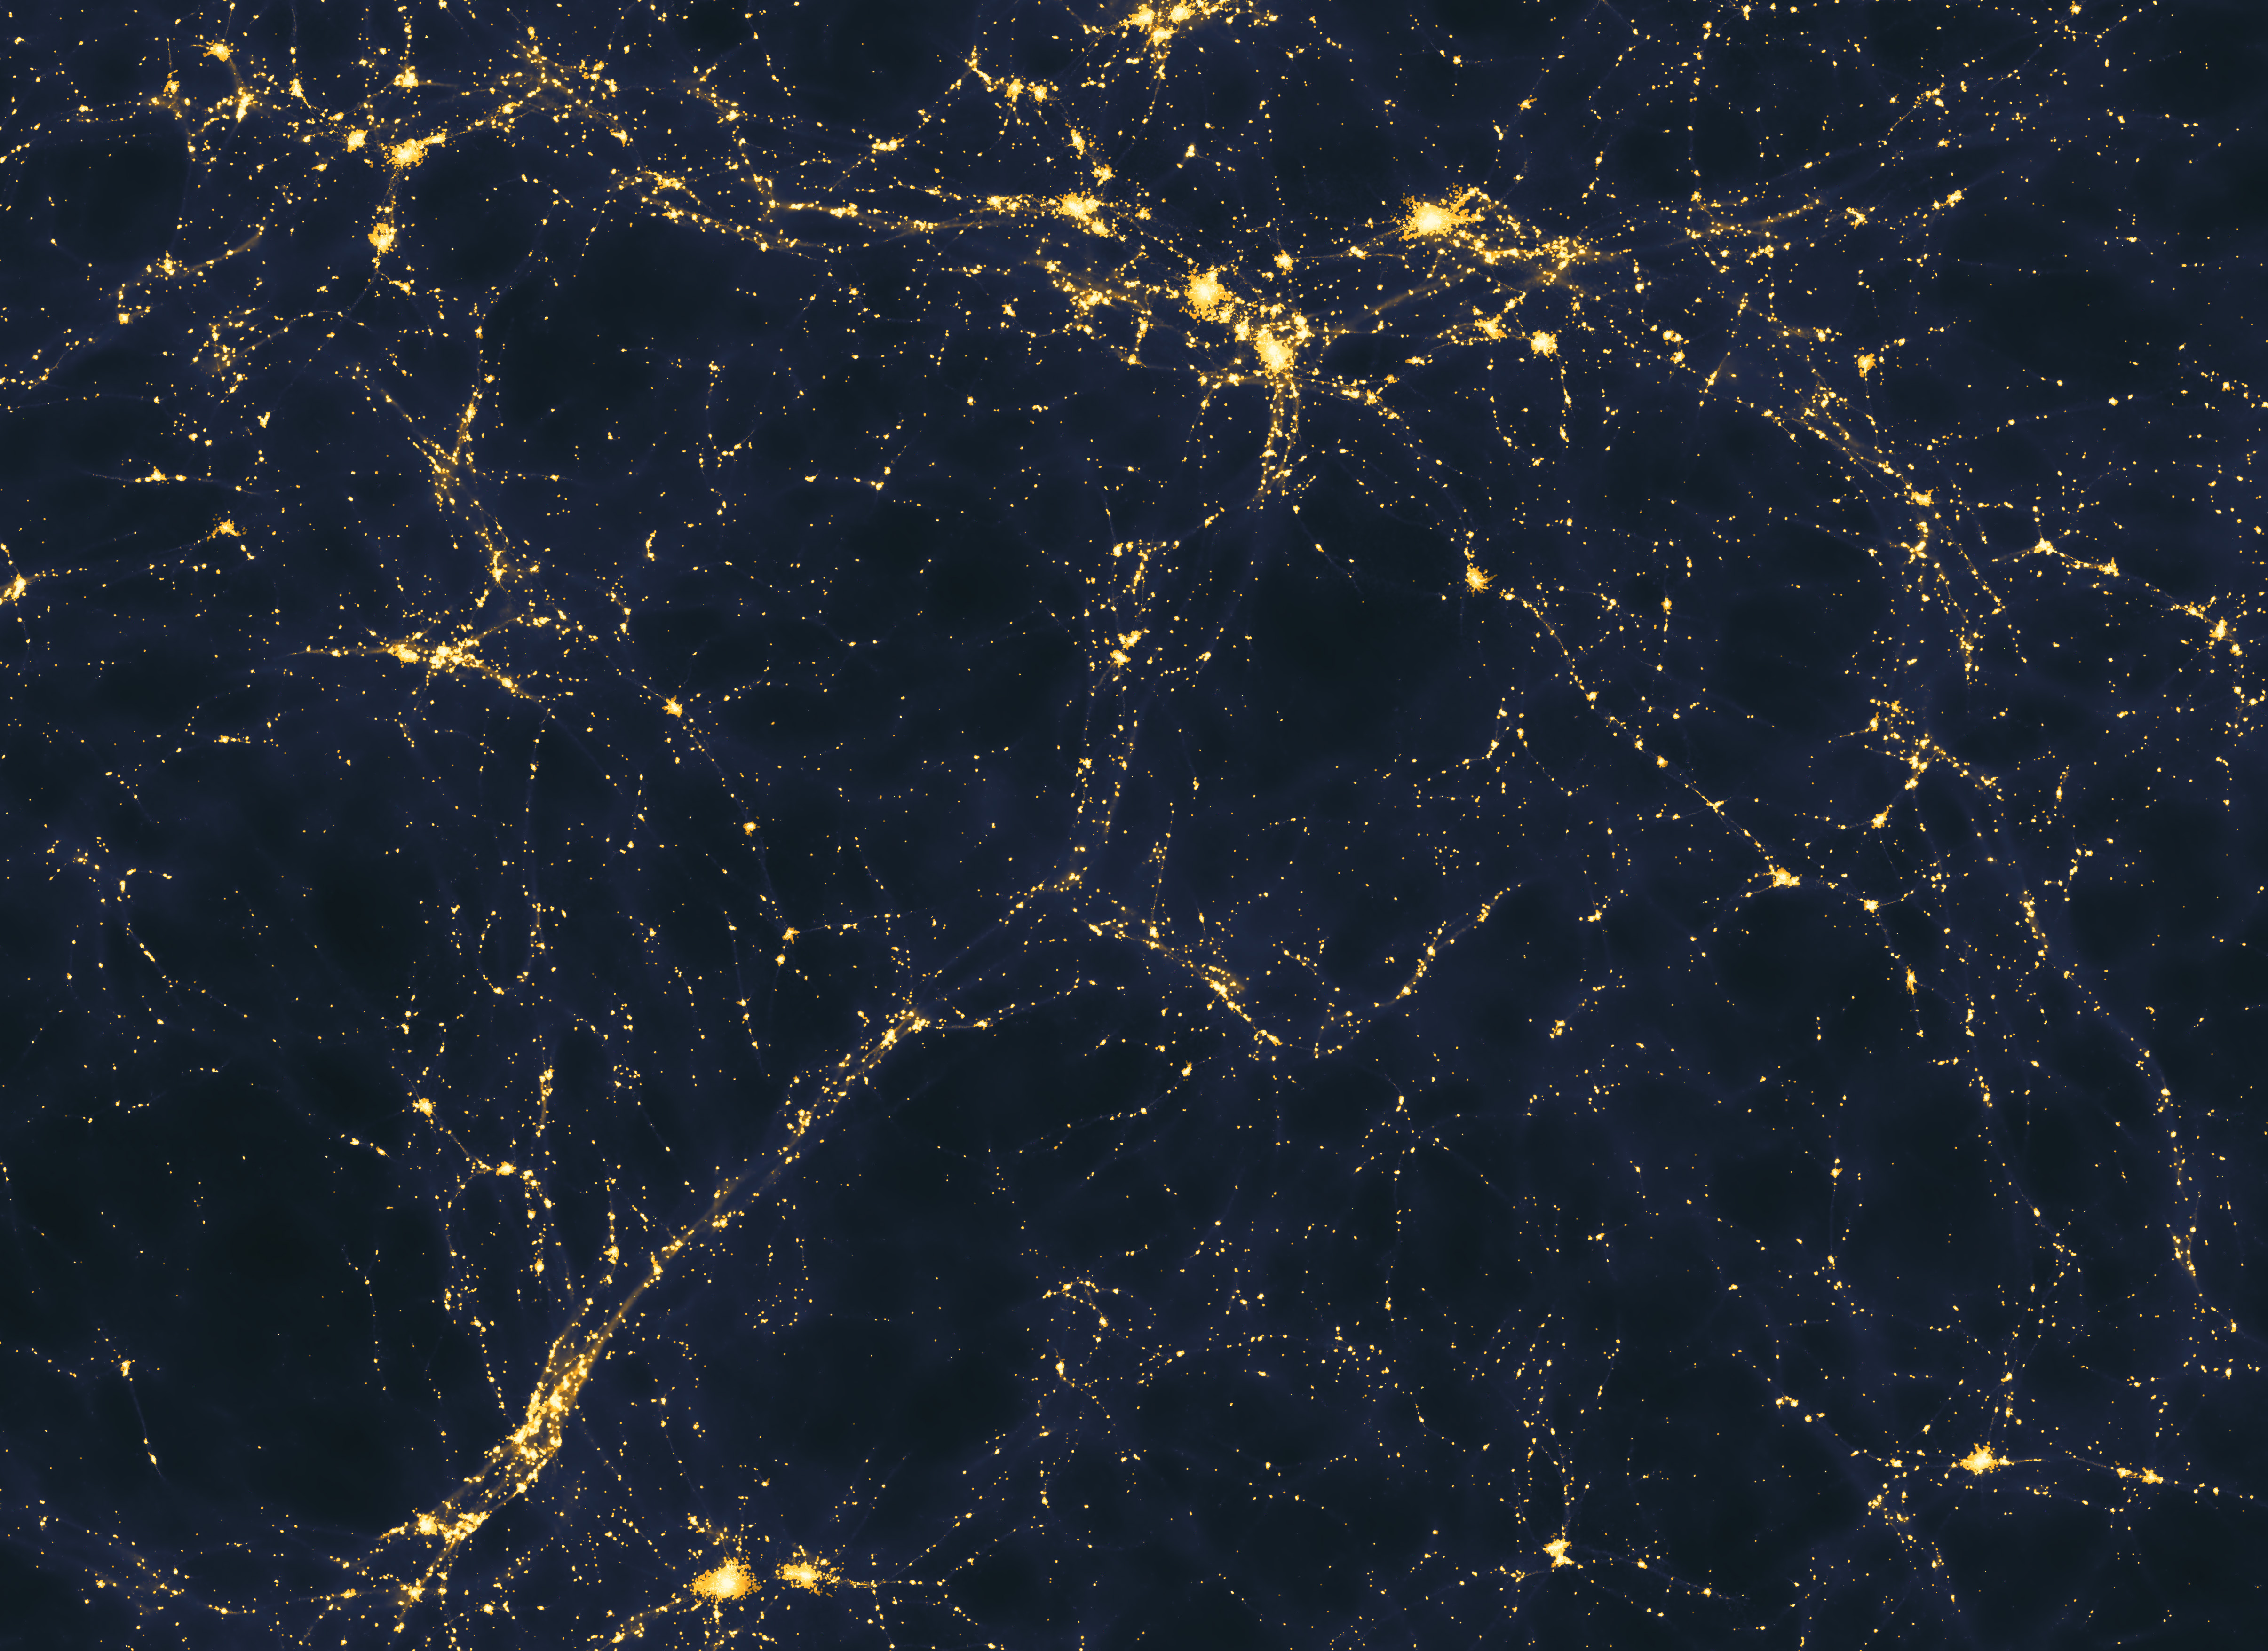 2.	Universo visto desde el Hubble: Wikimedia